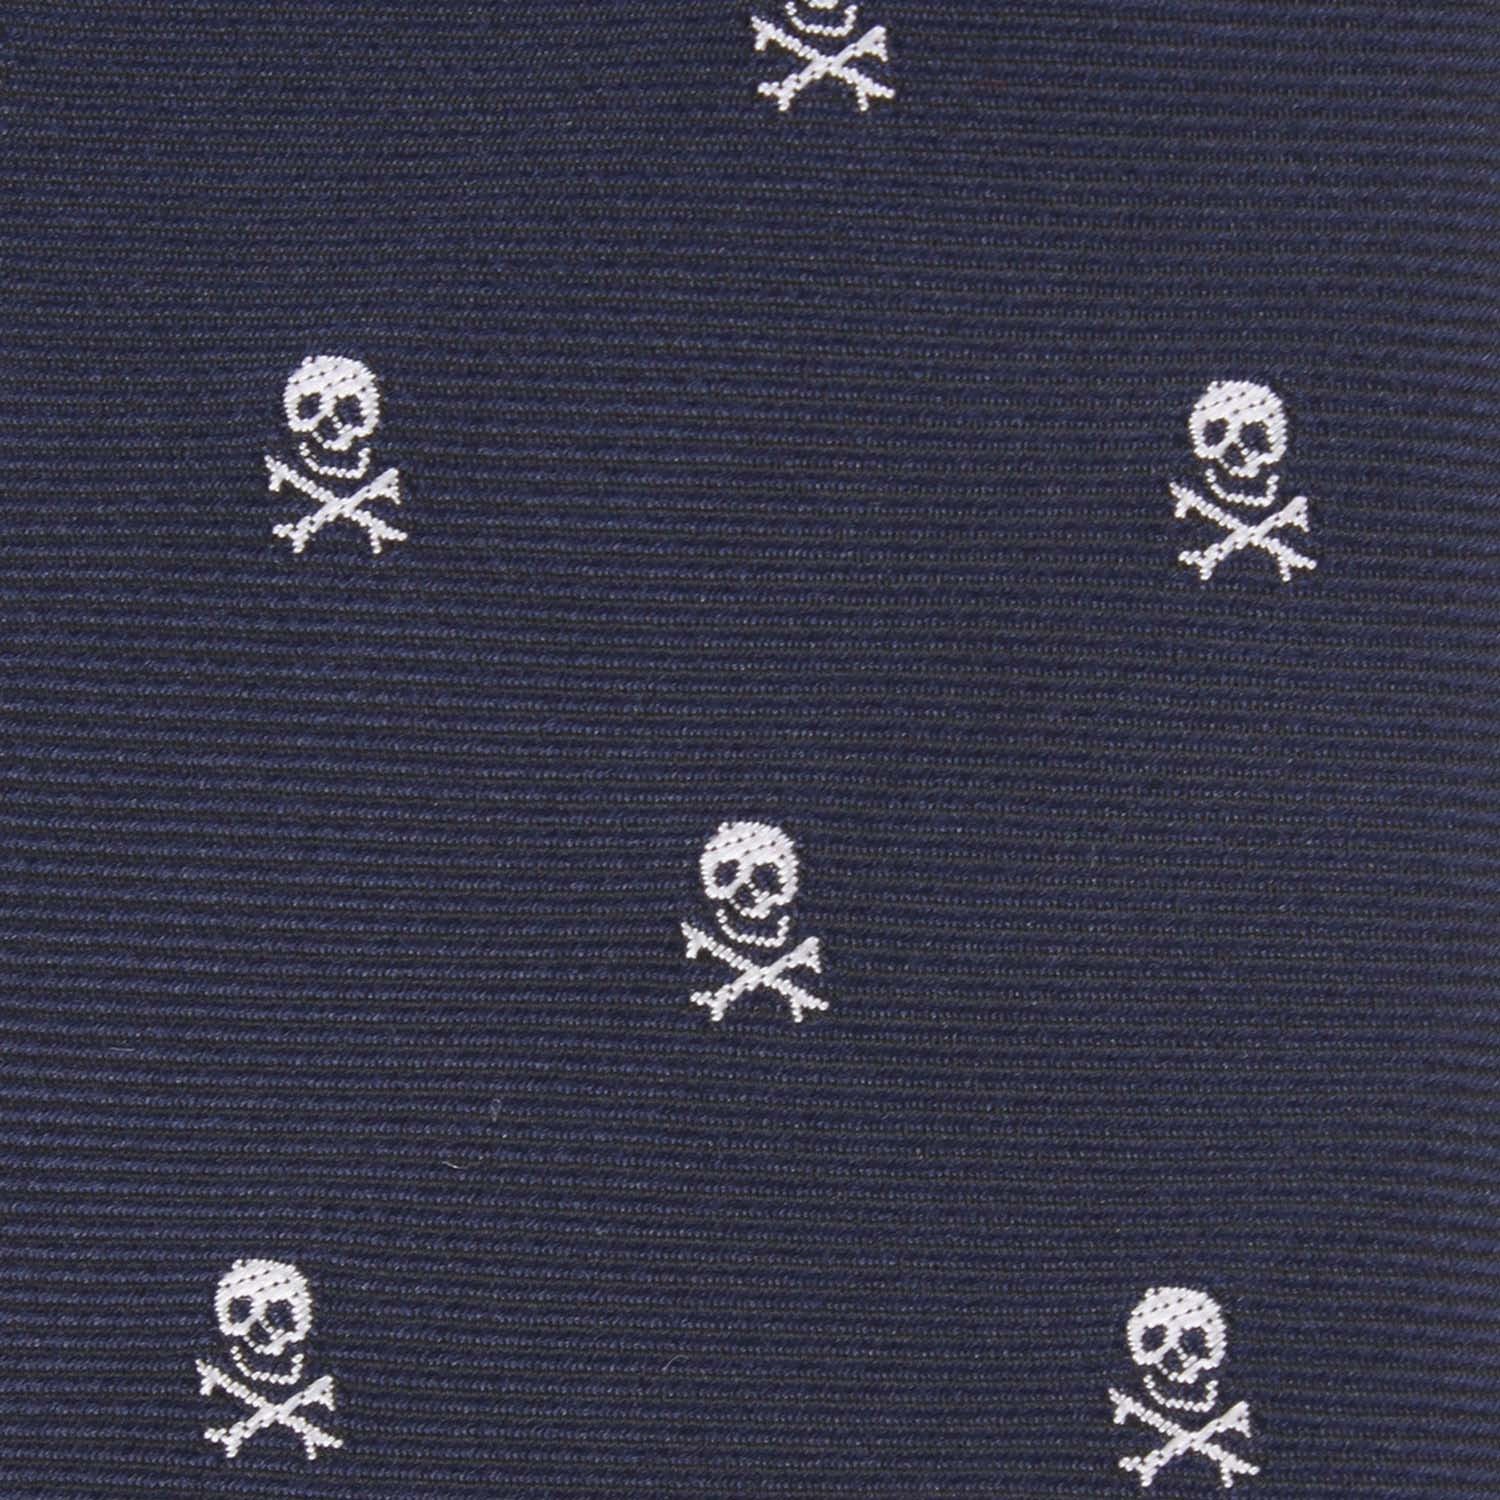 Navy Blue Pirate Skull Fabric Necktie M099